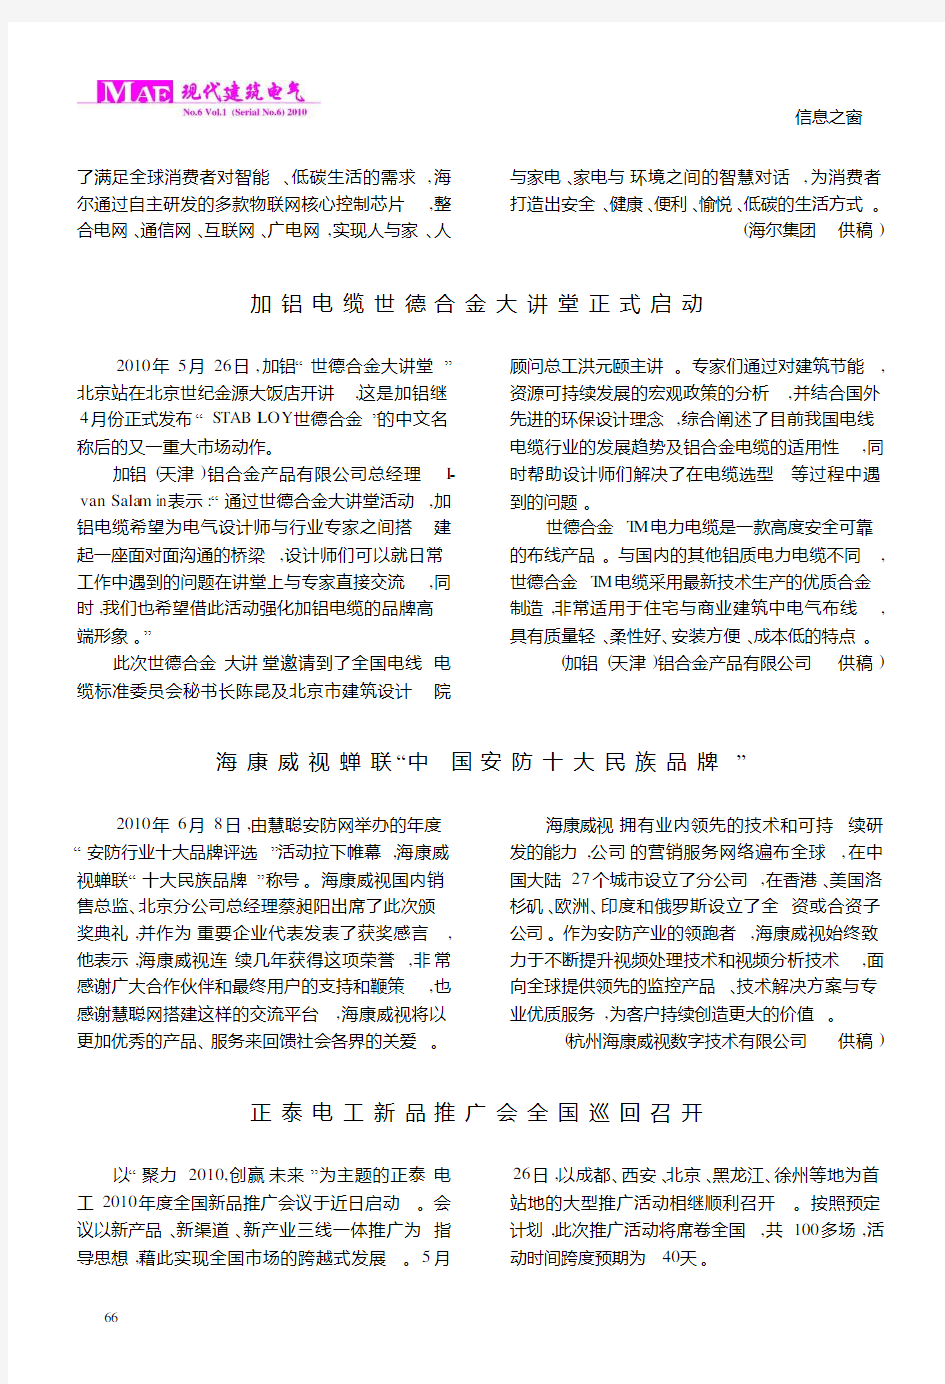 海康威视蝉联“中国安防十大民族品牌”